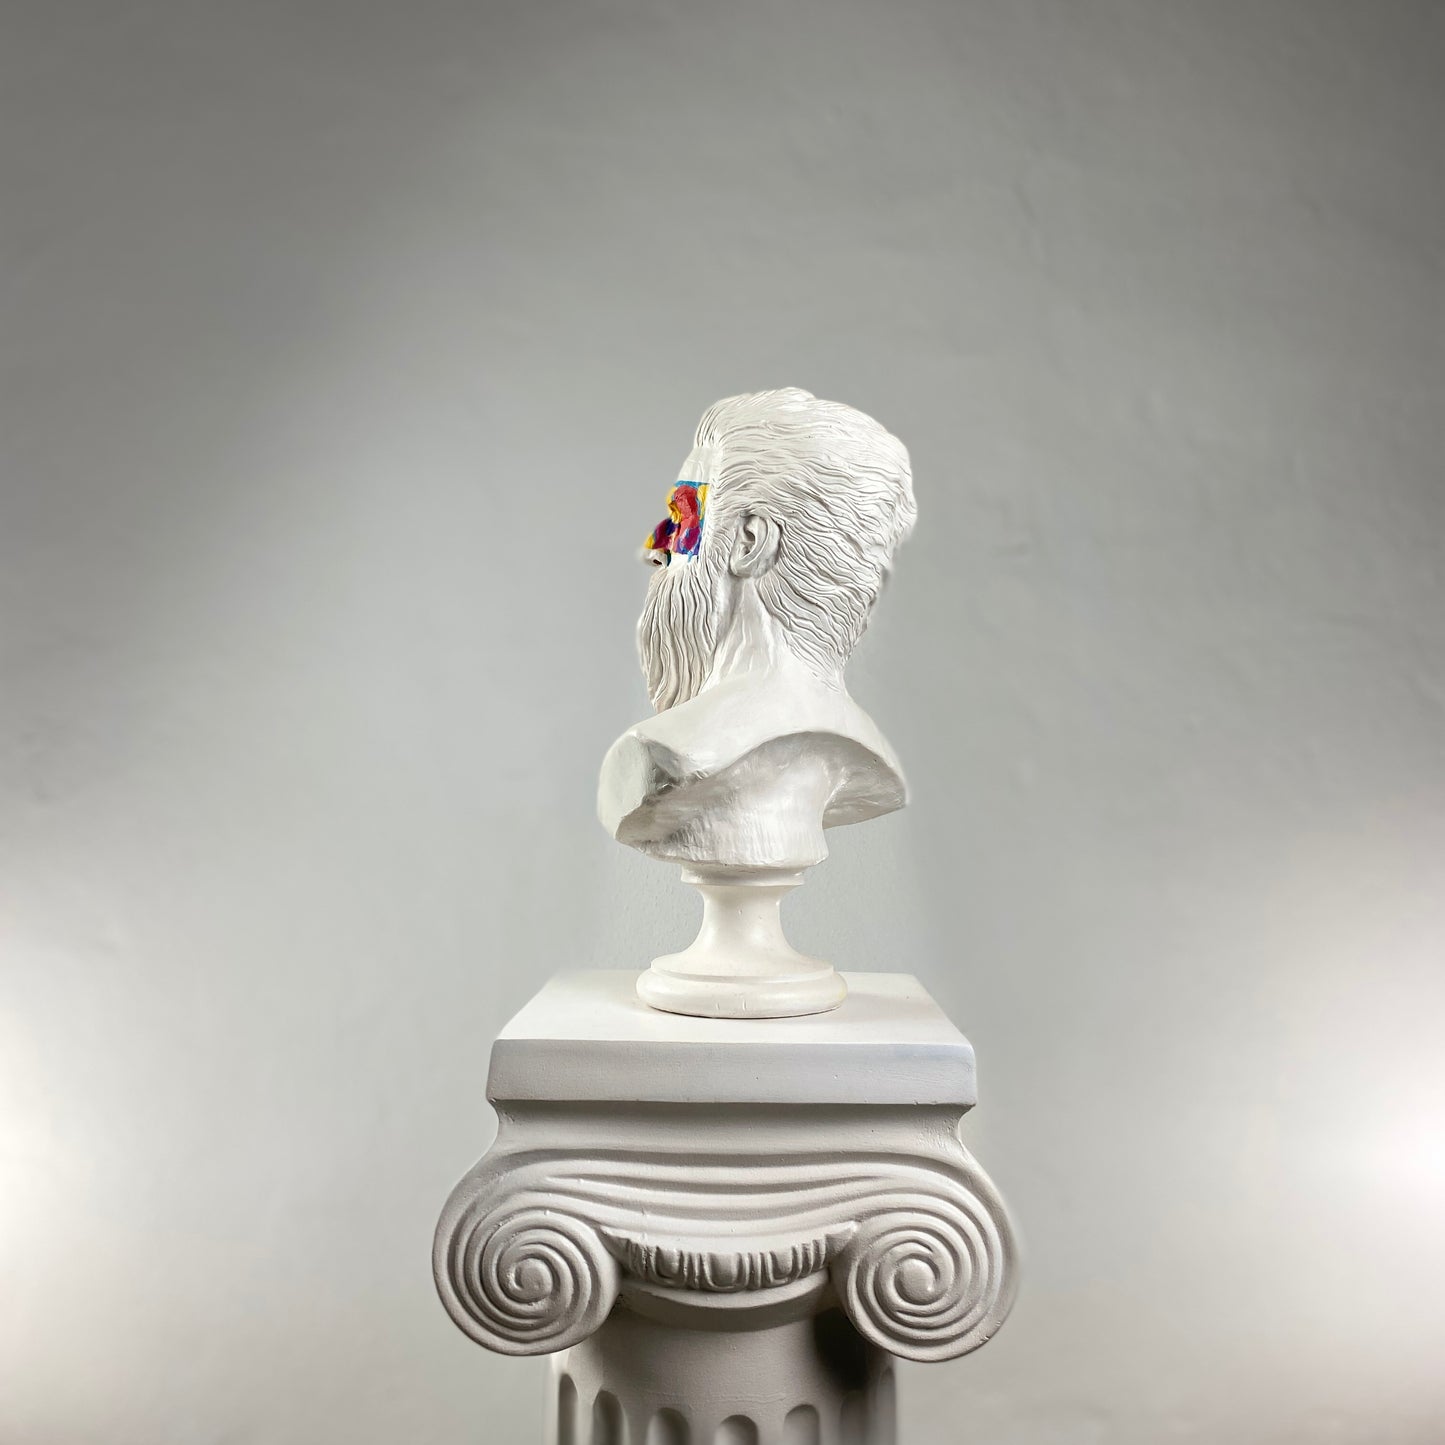 Poseidon 'Art Mask' Pop Art Sculpture, Modern Home Decor